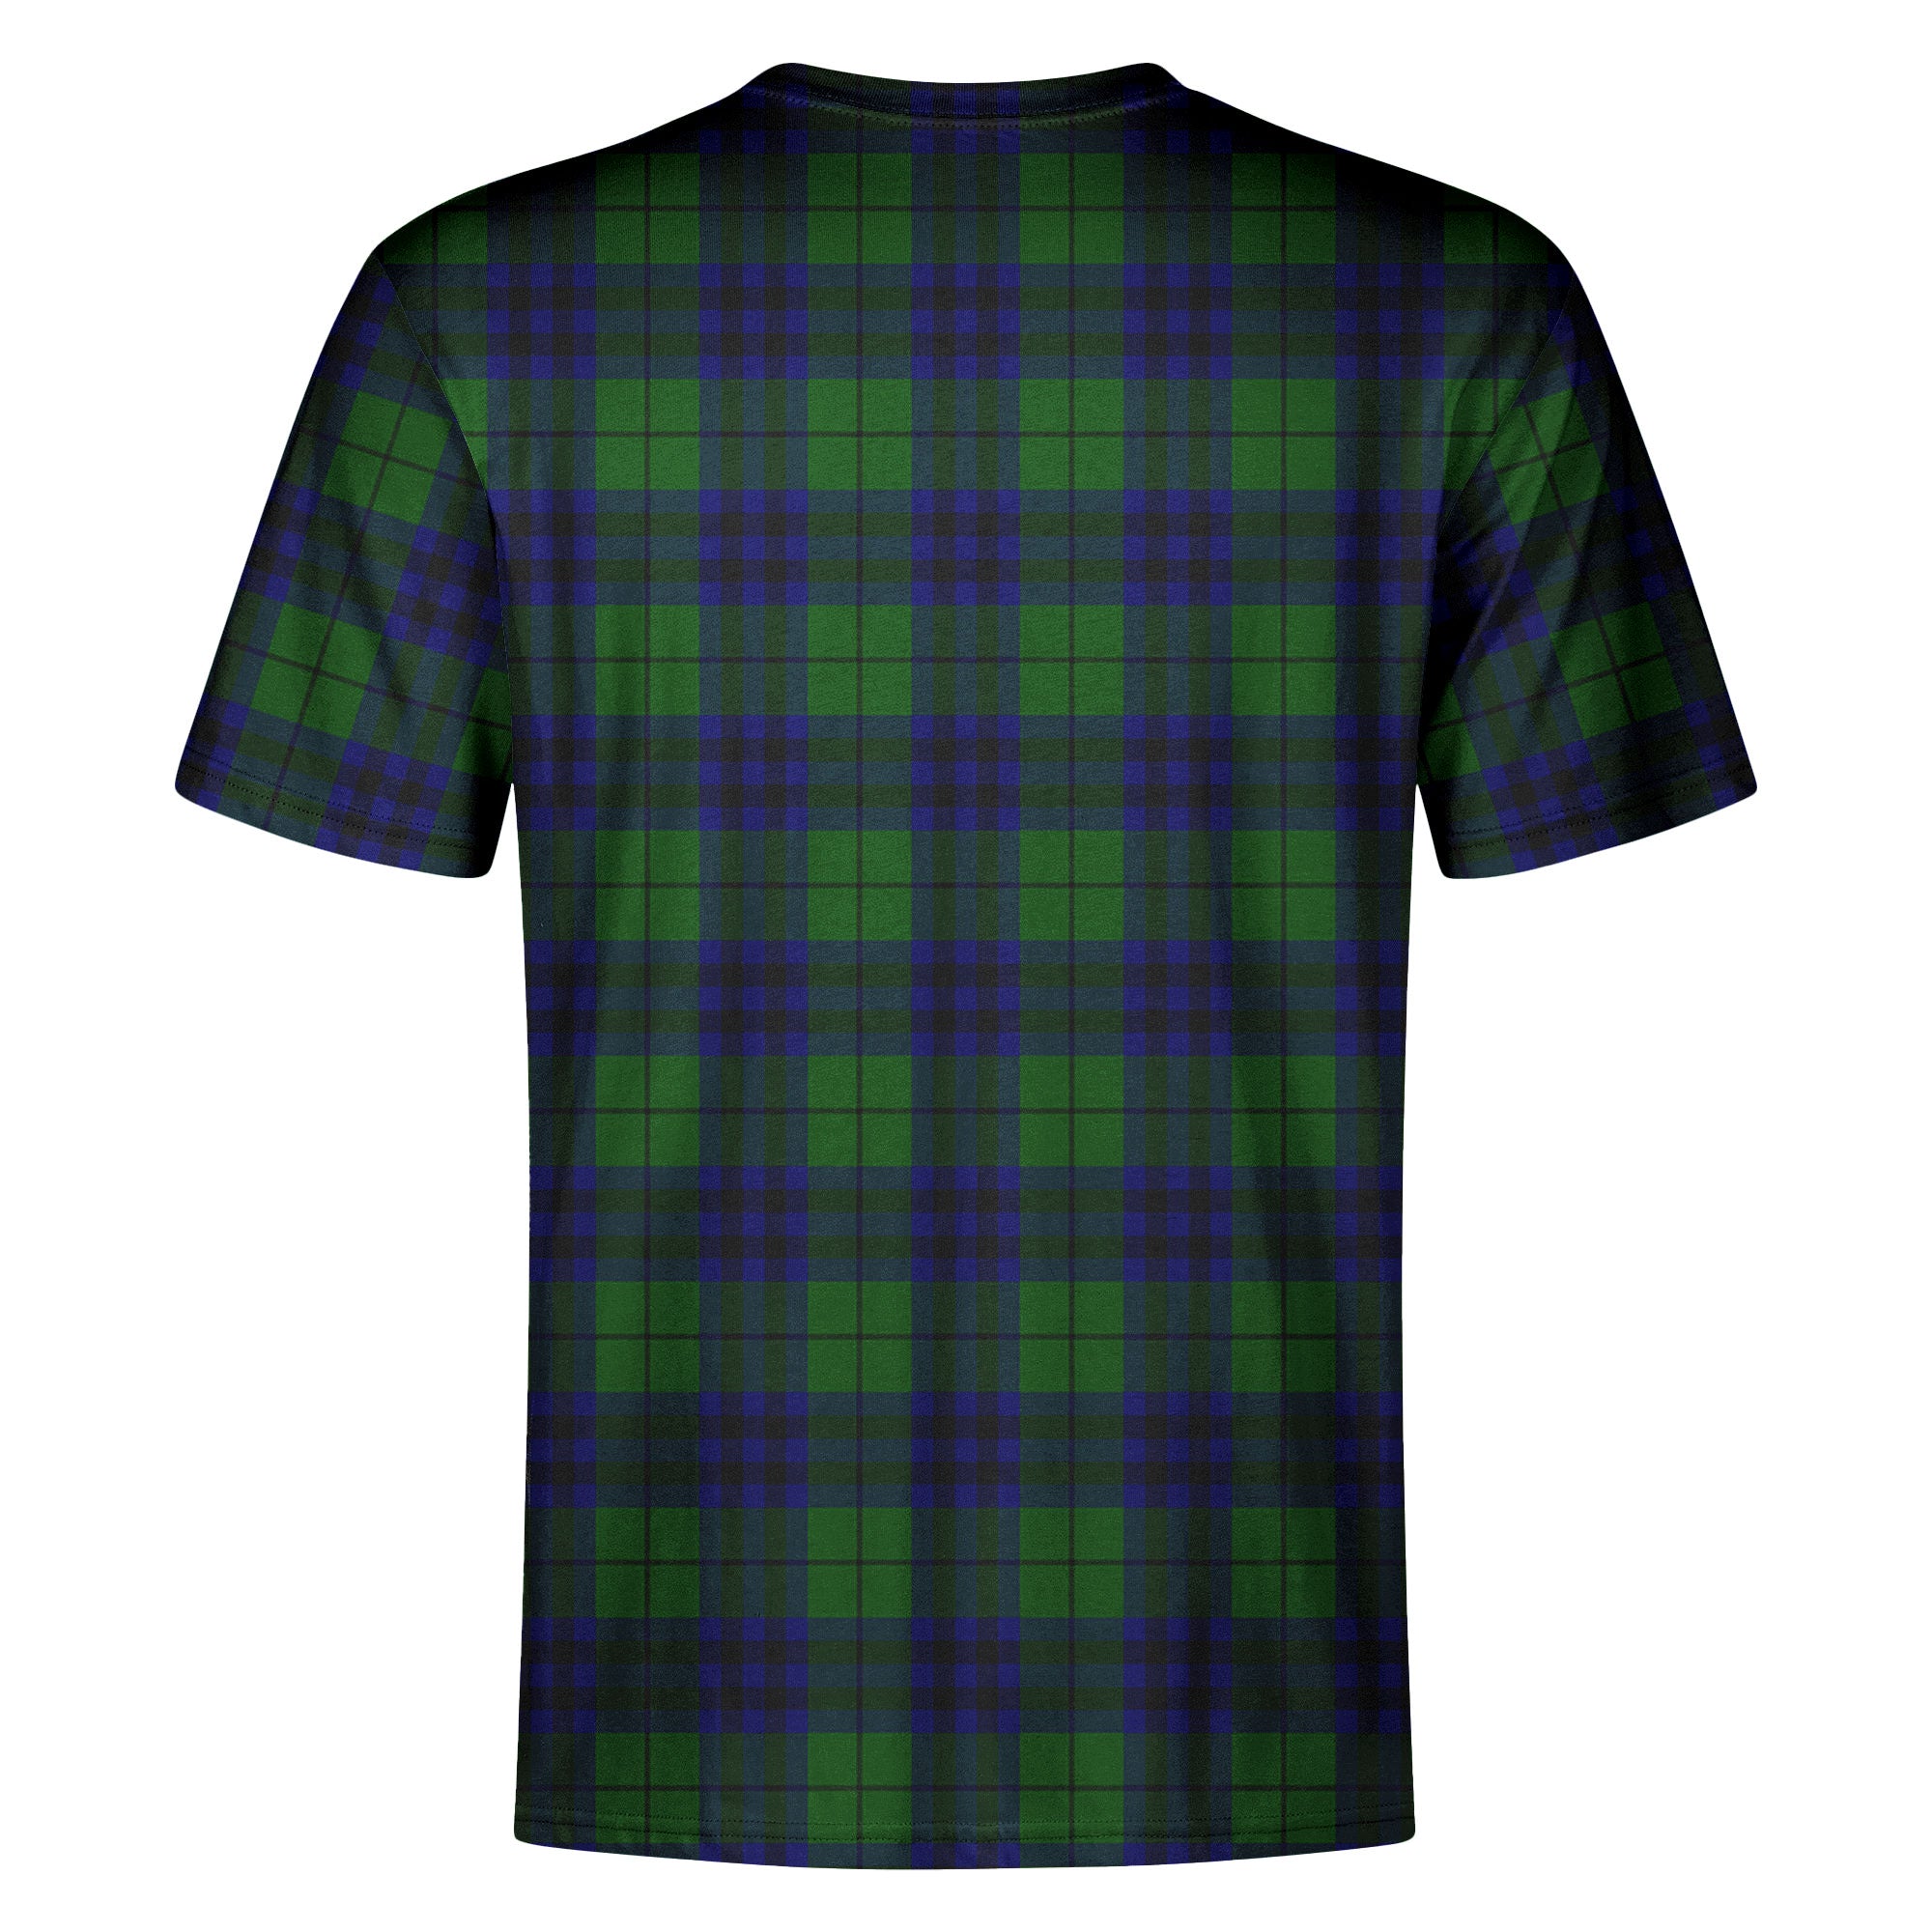 Keith Modern Tartan Crest T-shirt